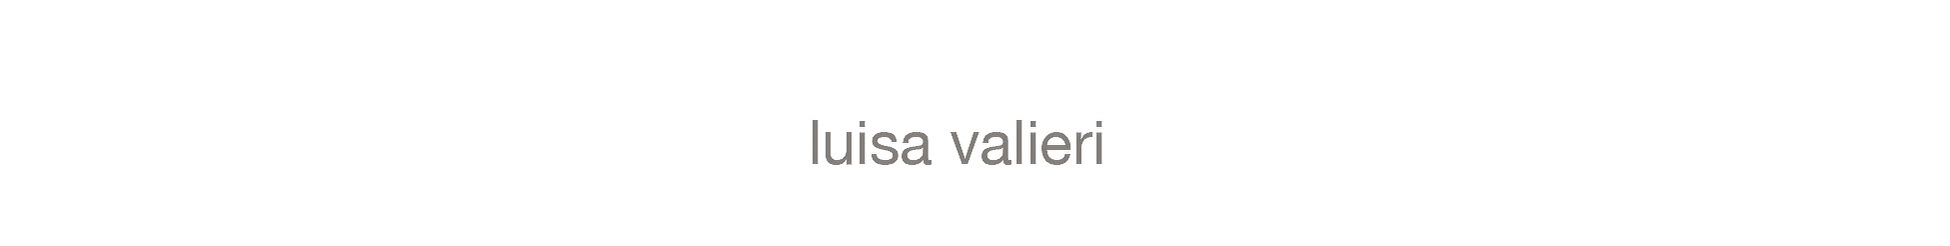 luisa valieri's profile banner